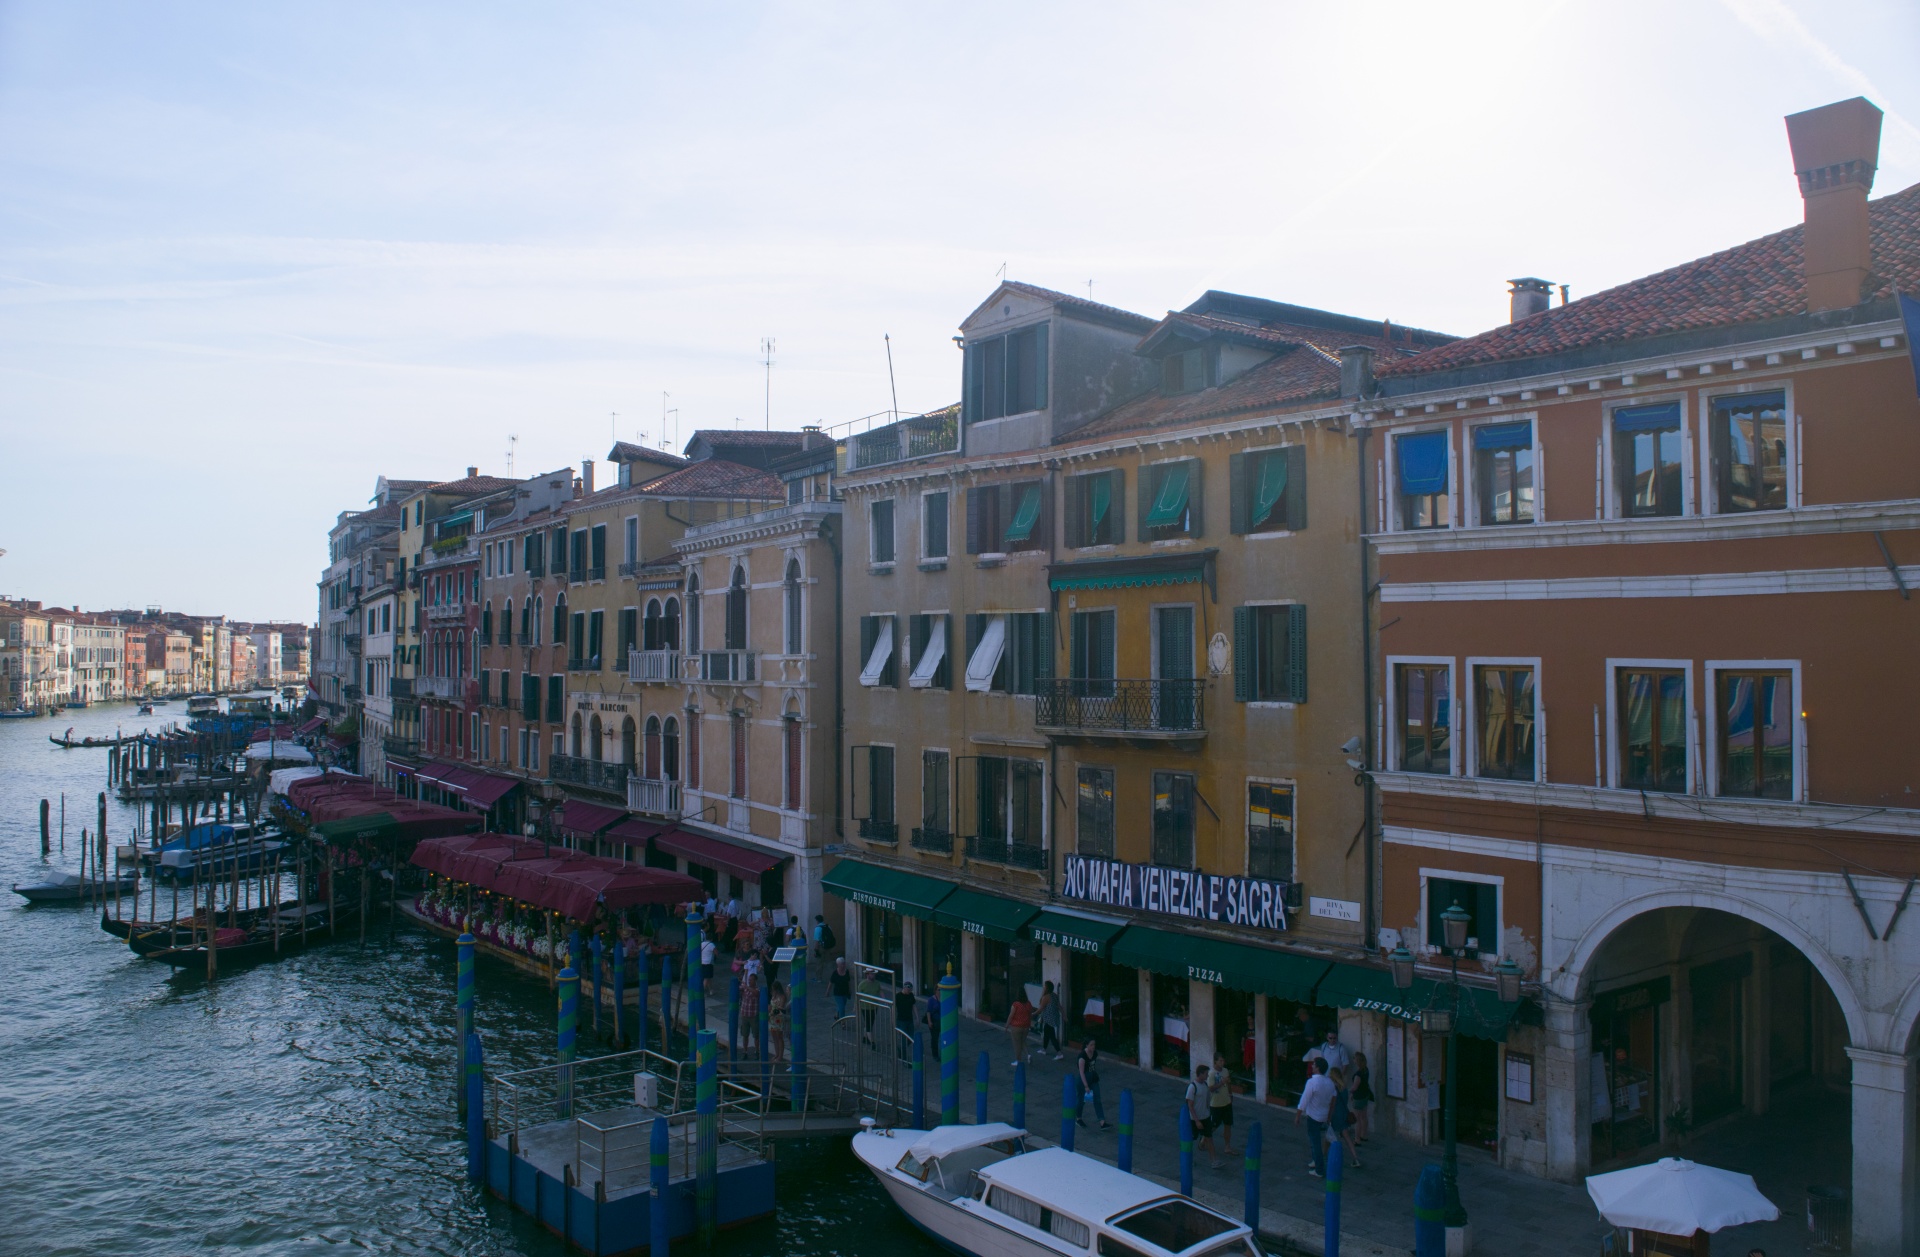 Venice Image 1185